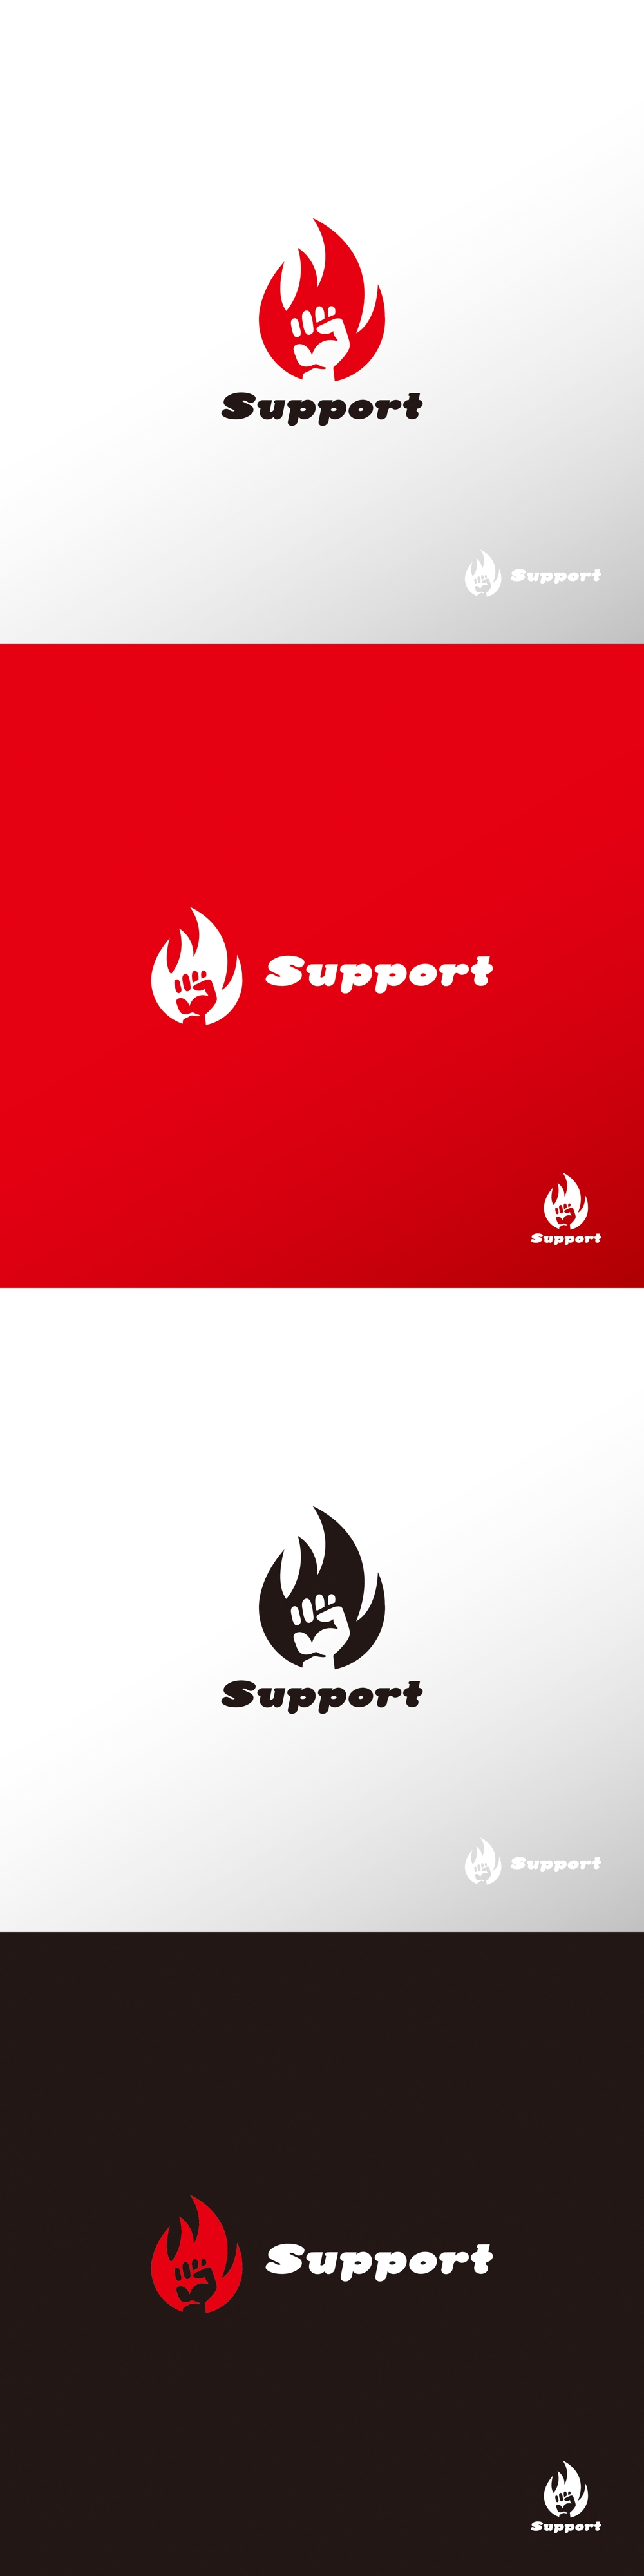 物流_Support_ロゴA1.jpg